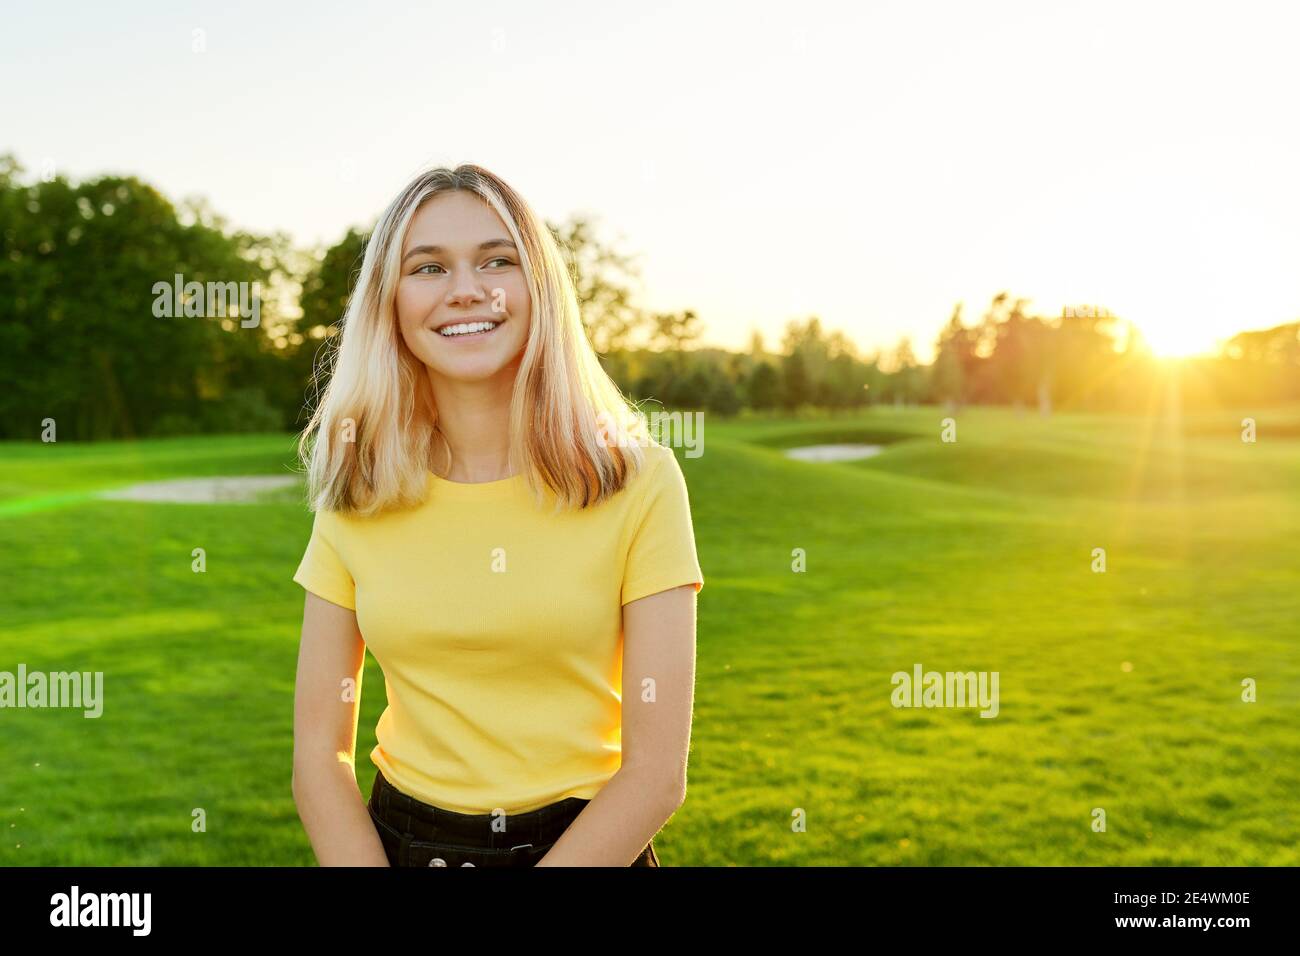 Portrait extérieur d'une adolescente souriante de 16 ans, 17 ans en T-shirt jaune, sur une pelouse verte ensoleillée Banque D'Images